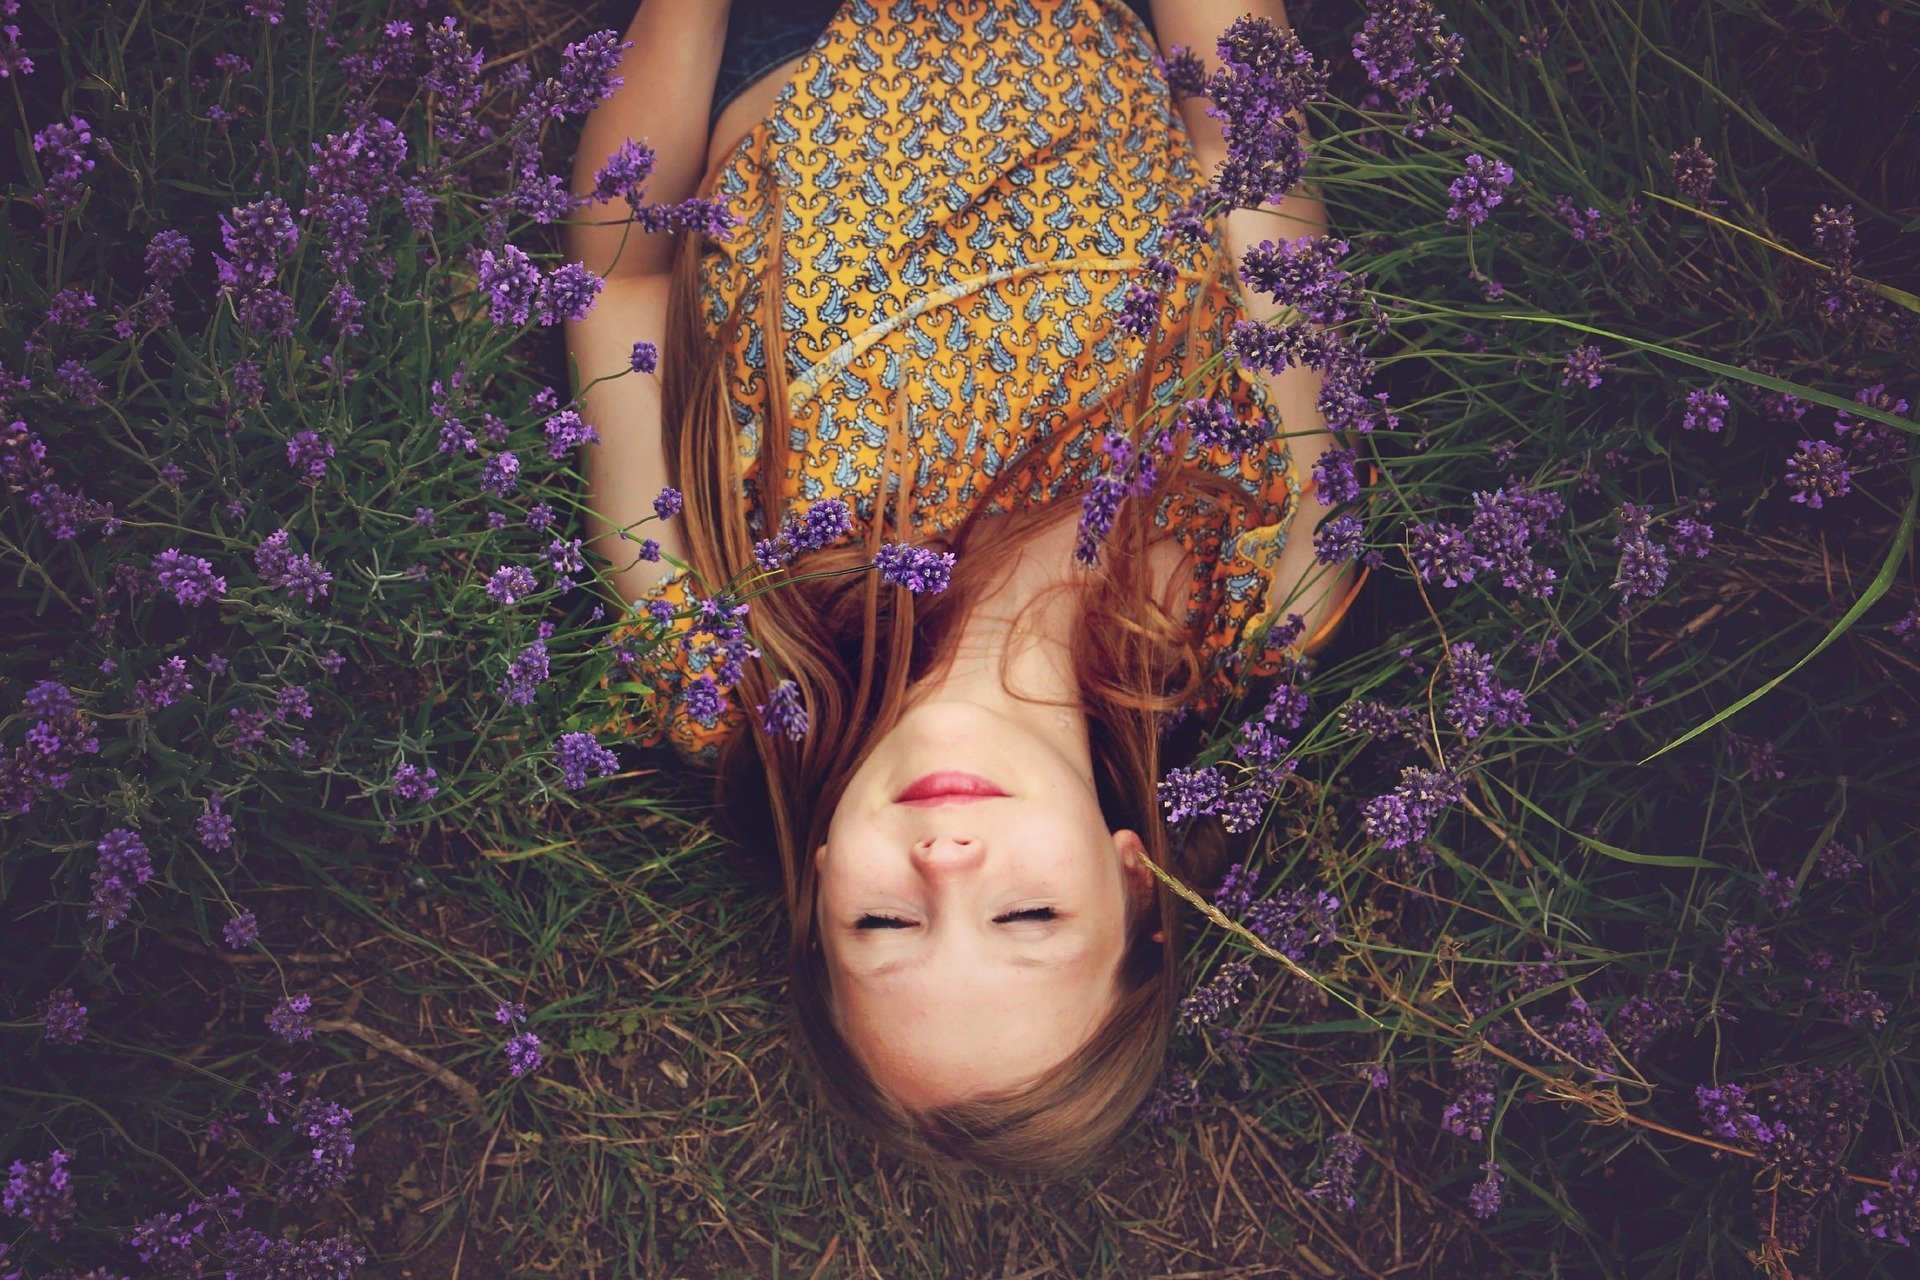 Menina deitada em campo, cercada de flores, de olhos fechados e sorriso no rosto